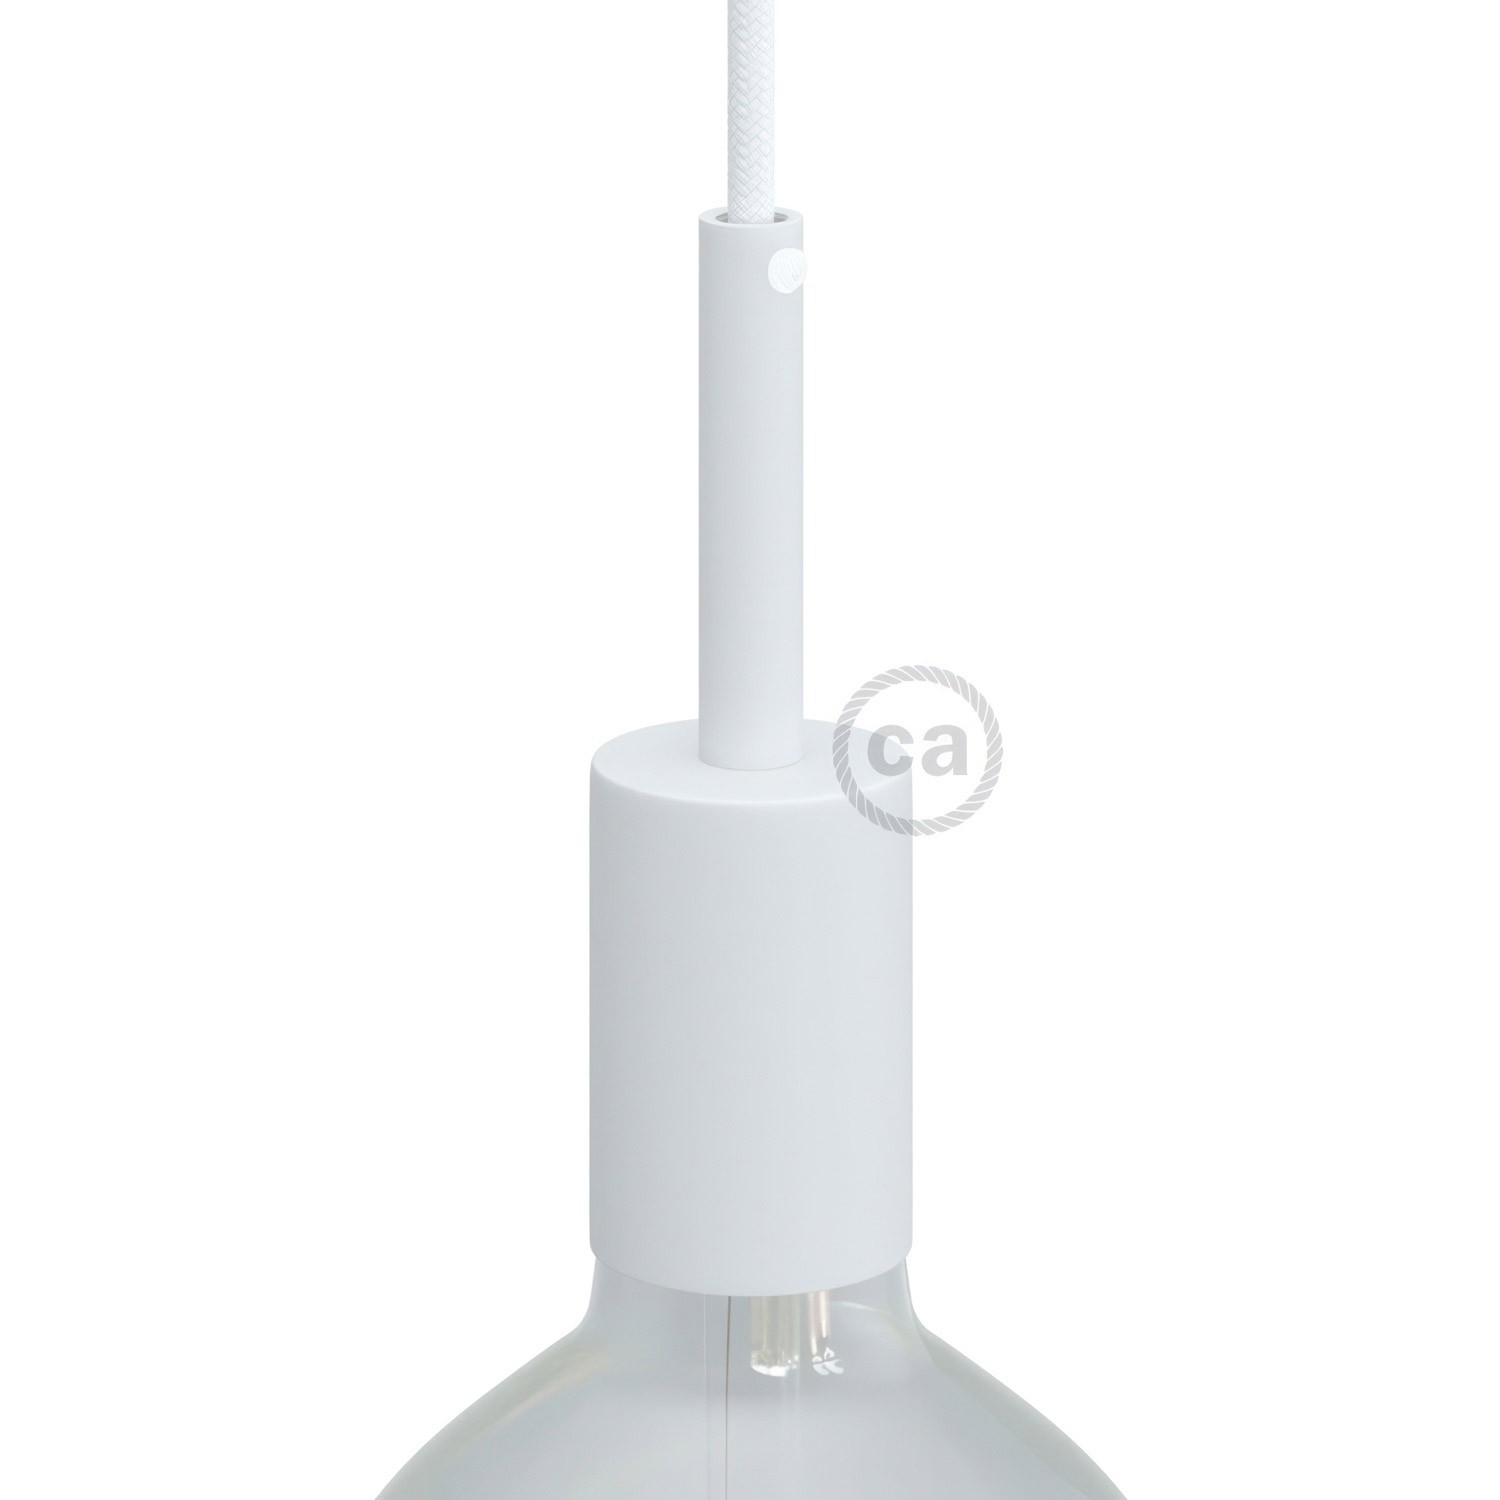 Zylindrisches E27-Lampenfassungs-Kit aus Metall mit 7 cm Kabelklemme